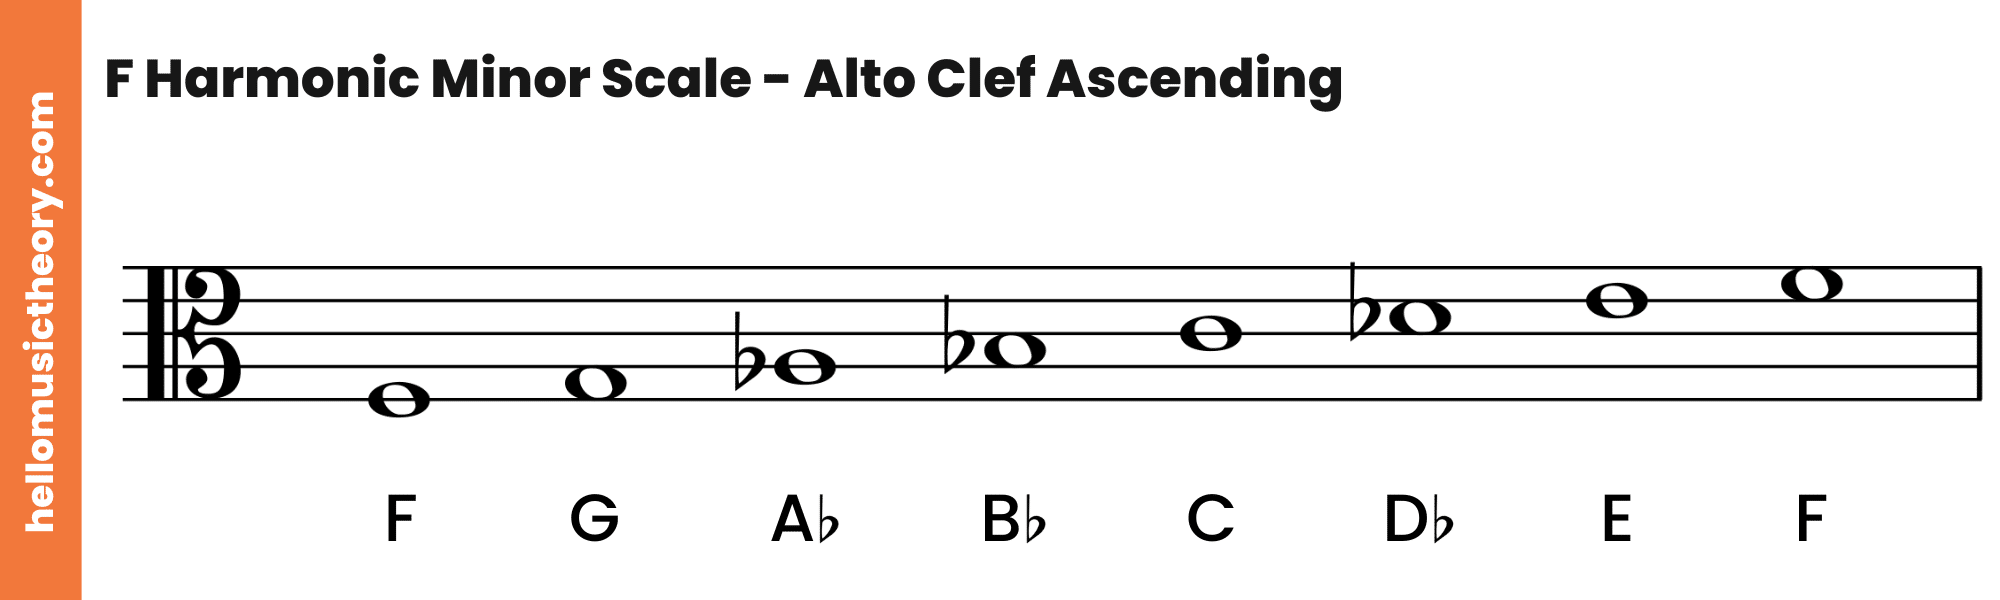 F Harmonic Minor Scale Alto Clef Ascending